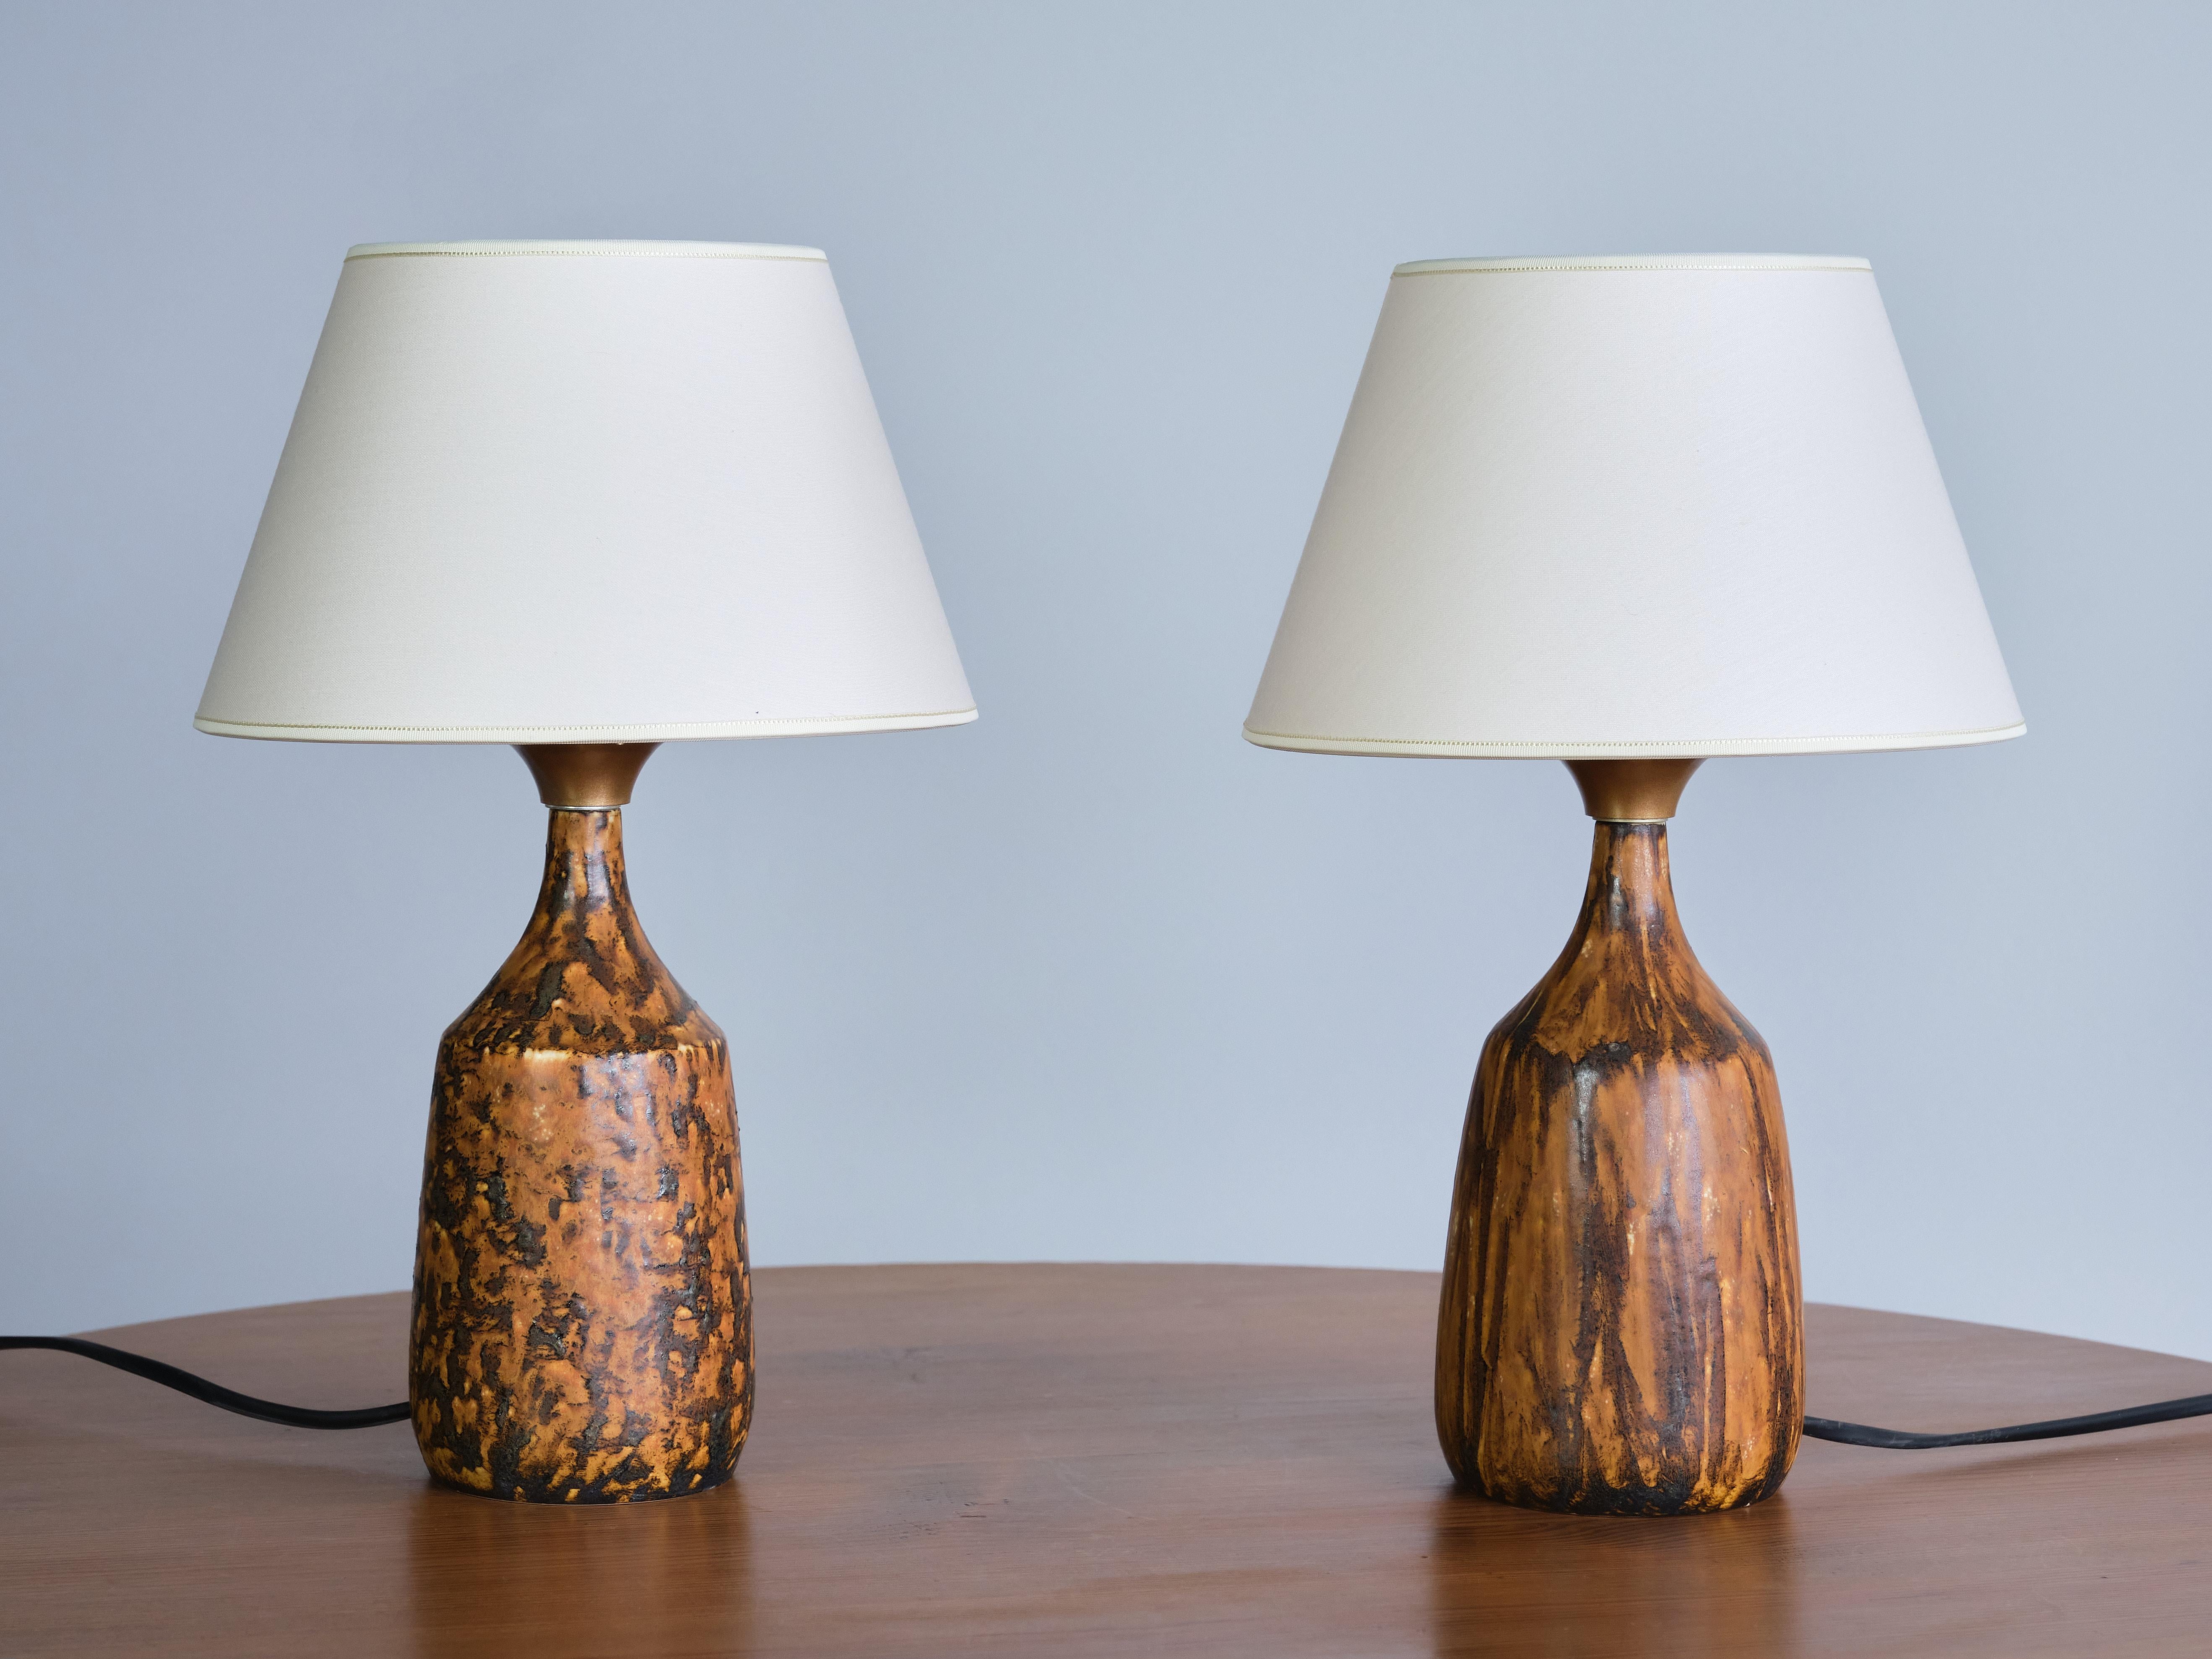 Cette rare paire de lampes de table a été conçue par Gunnar Borg et produite par son propre atelier de céramique 